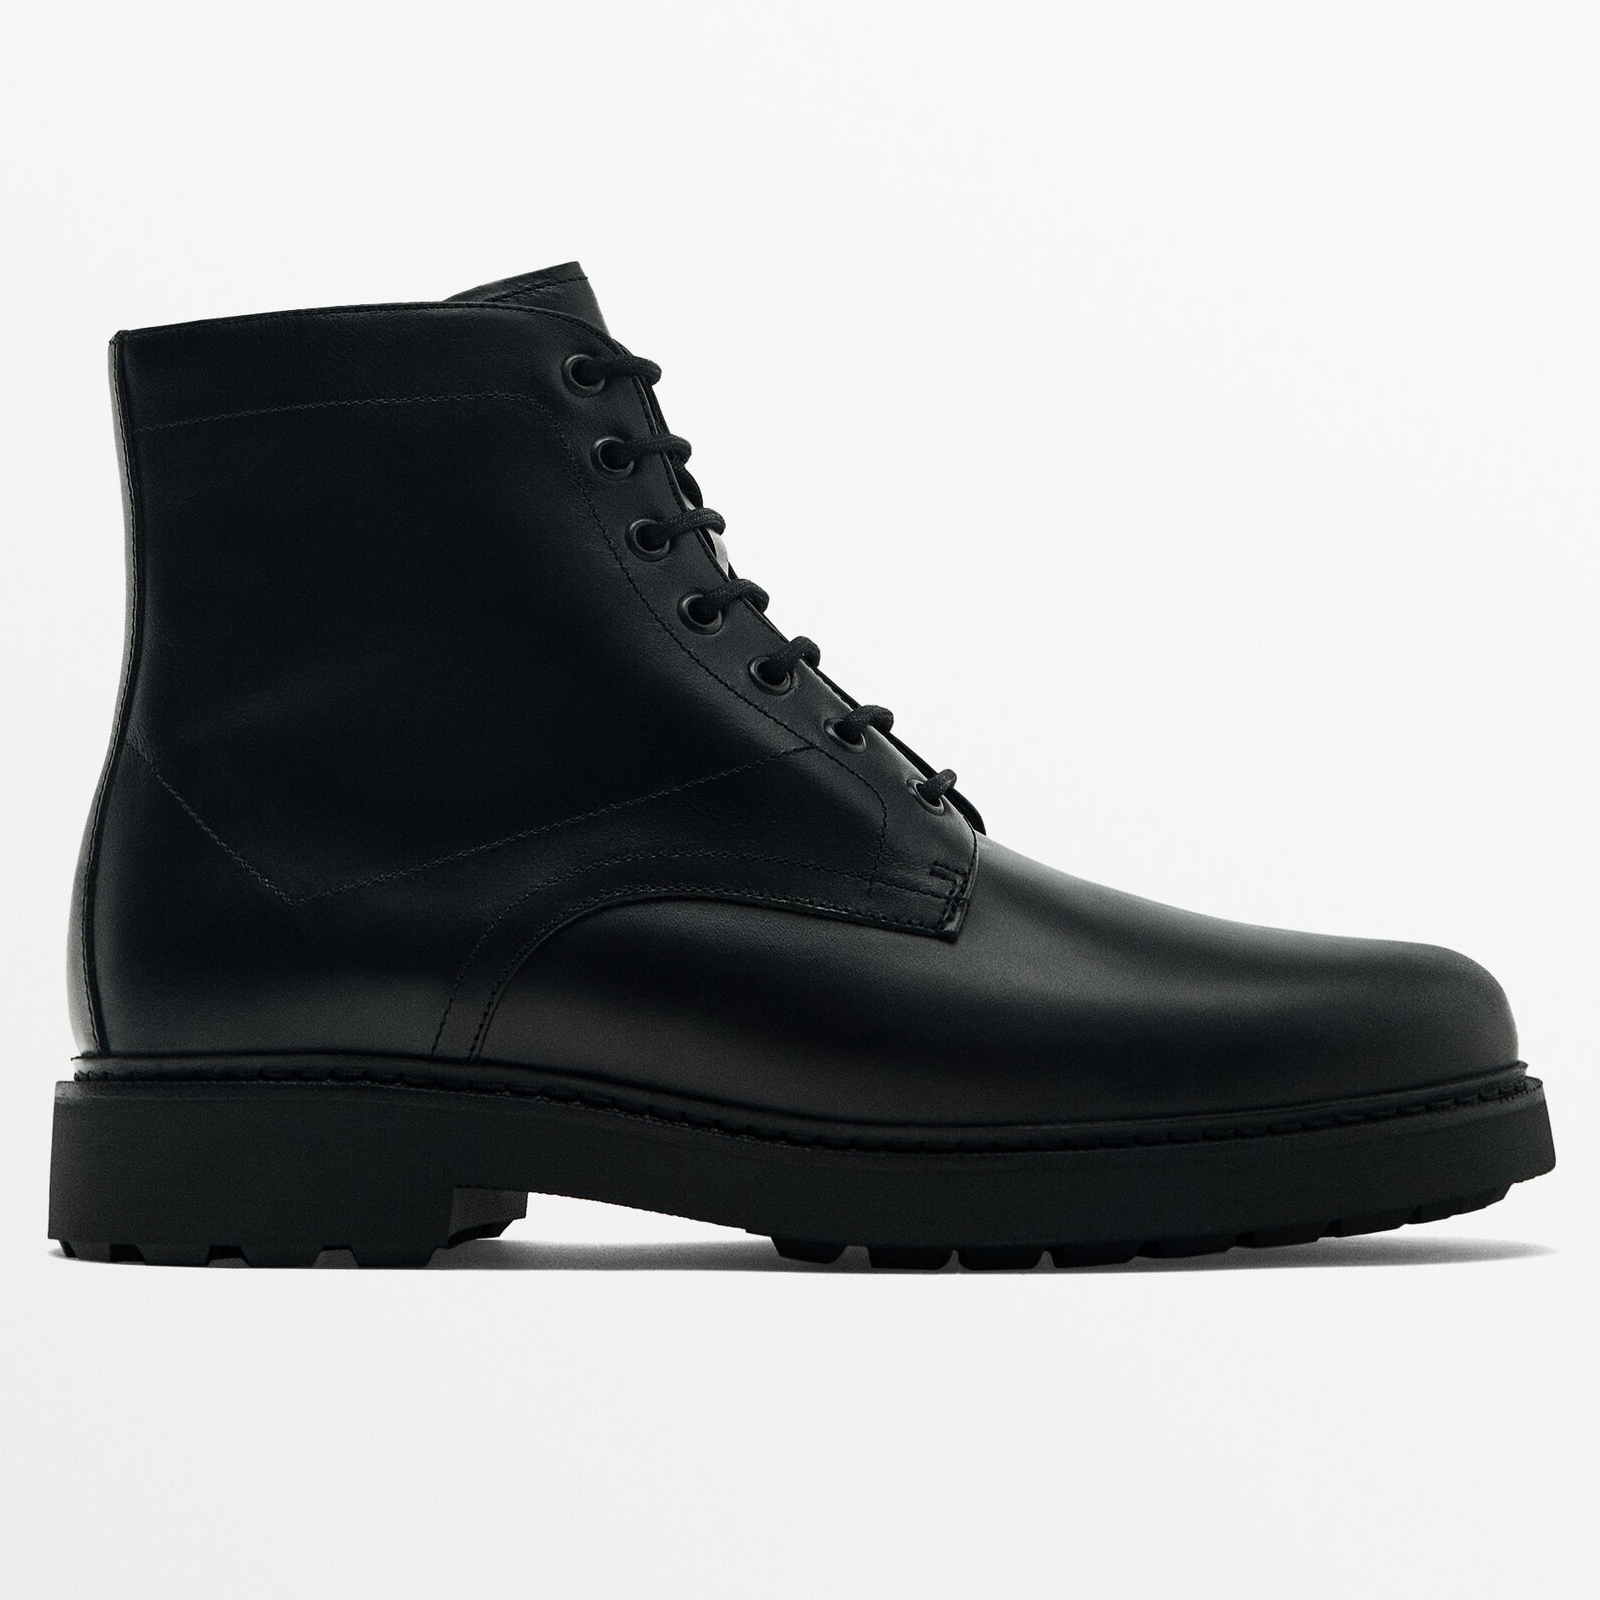 Ботинки Massimo Dutti Leather, черный ботинки massimo dutti leather boots limited edition коричневый